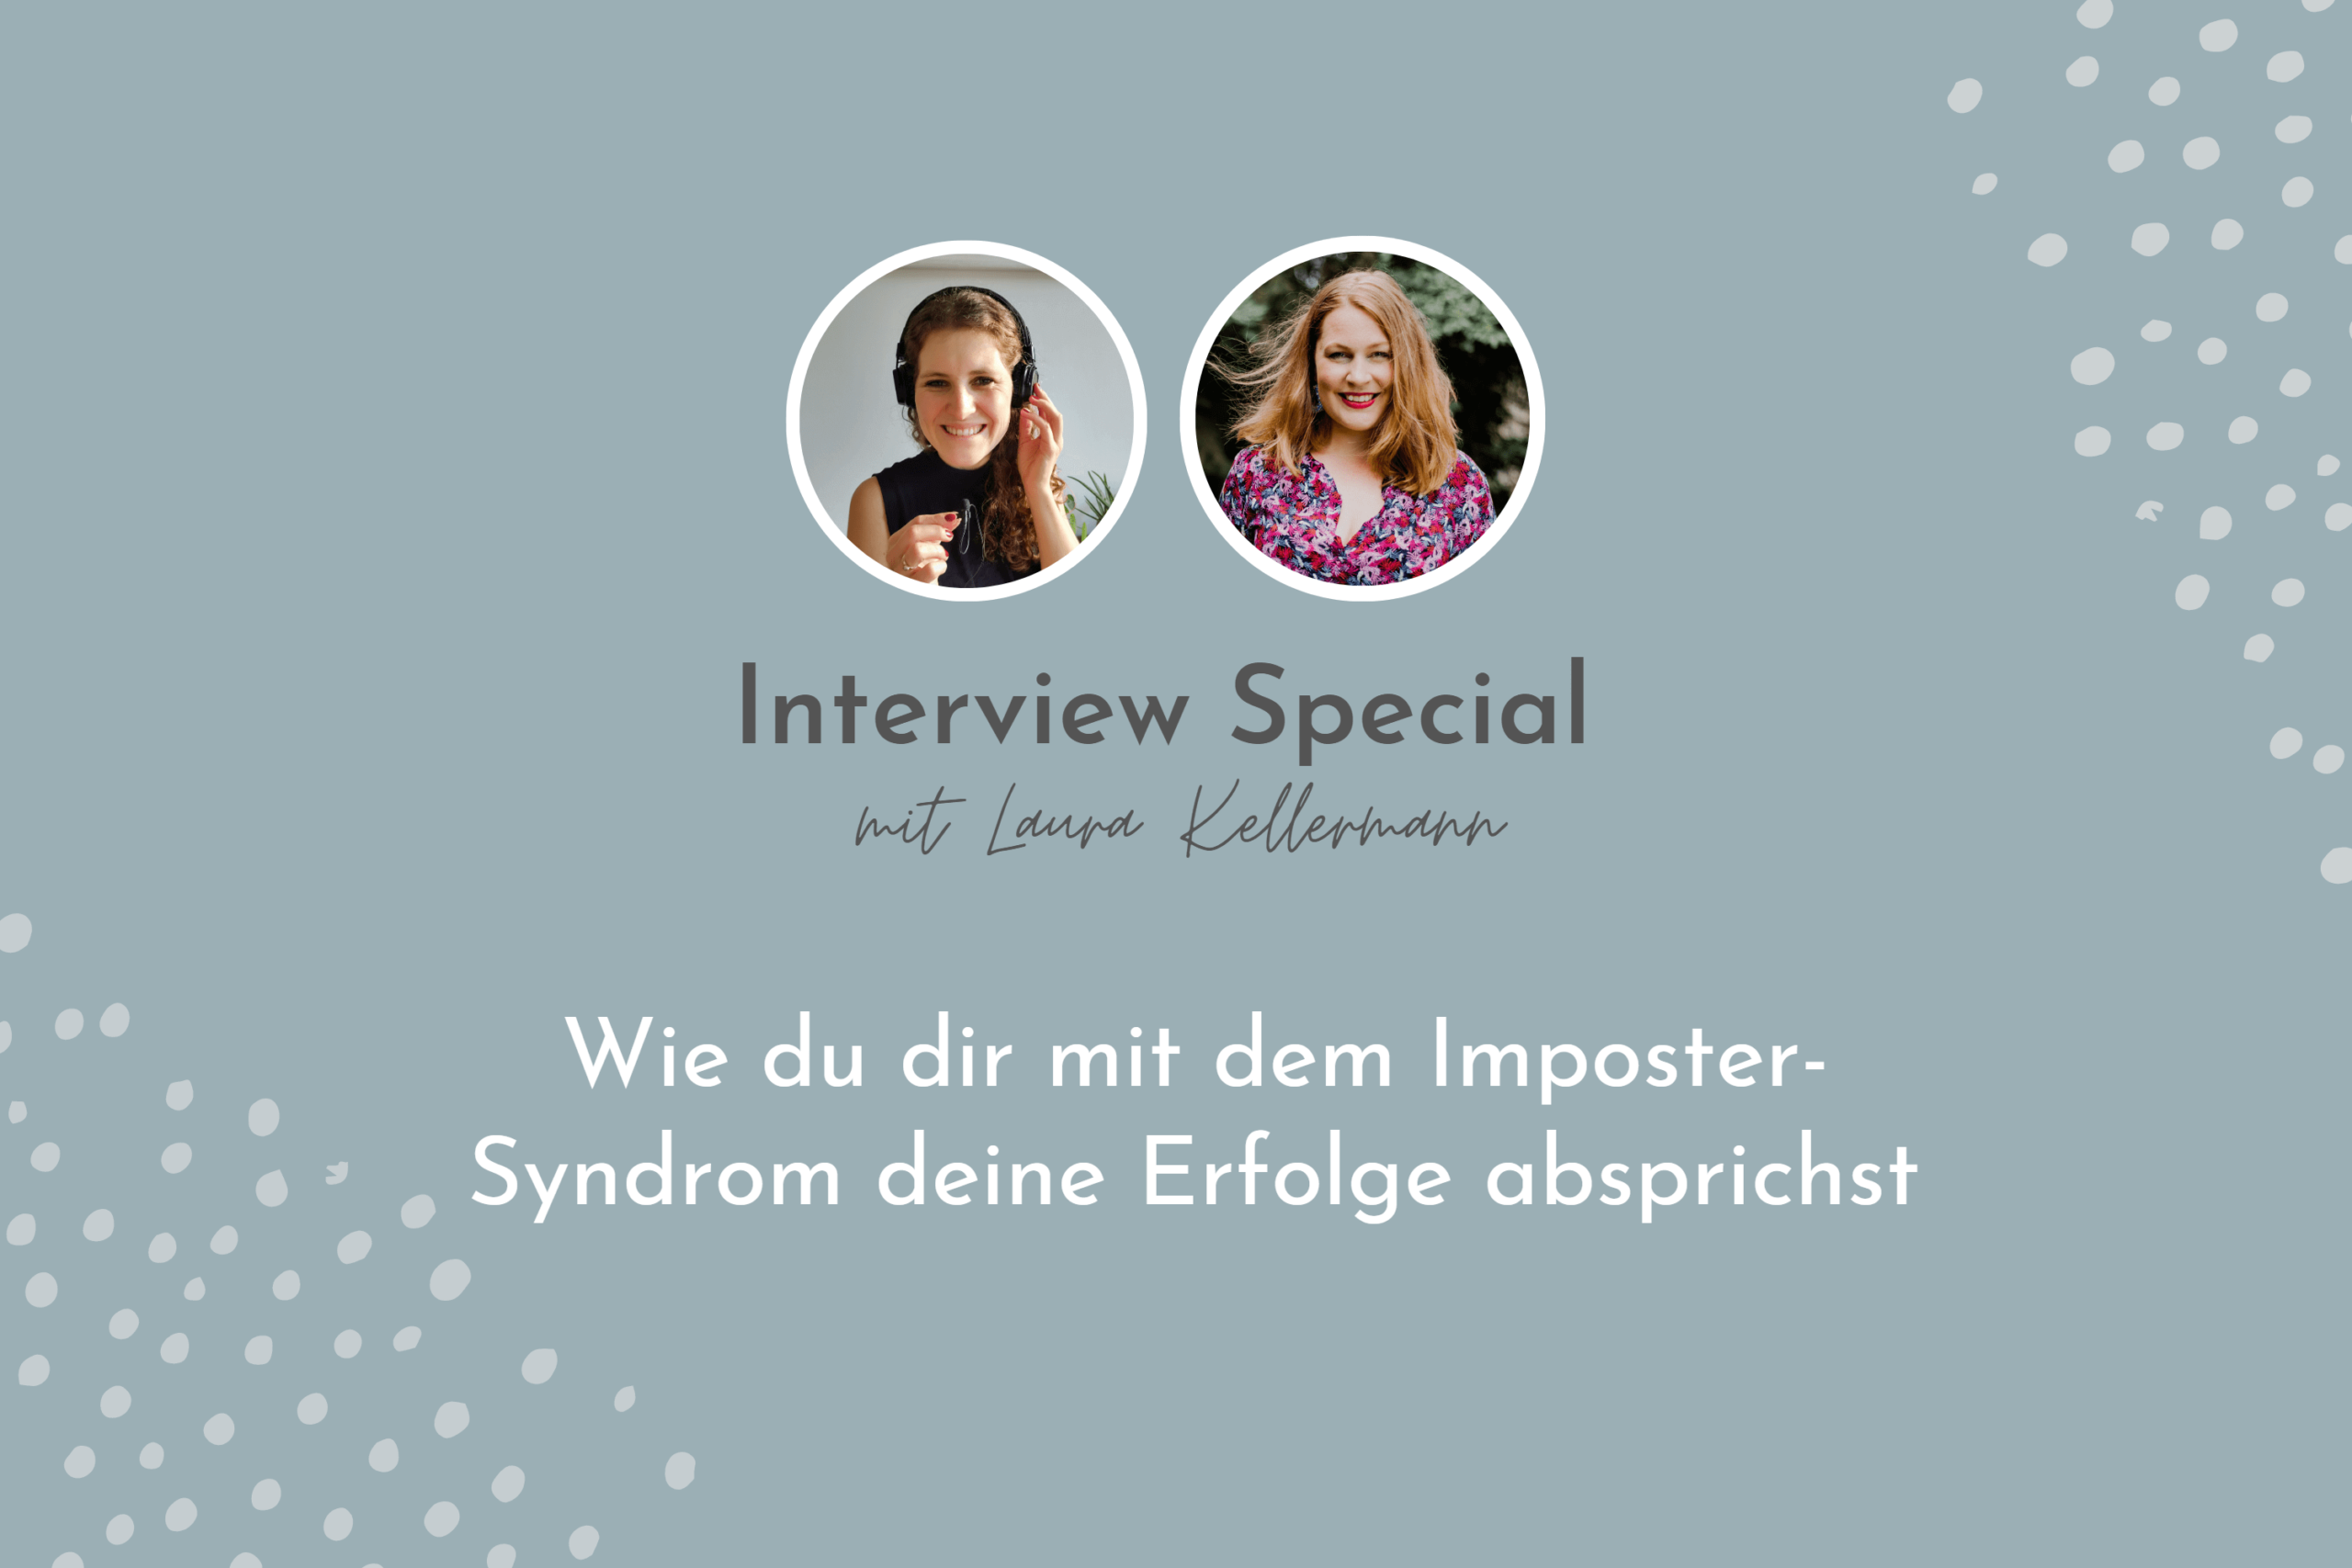 Interview mit Laura Kellermann zum Hochstapler-Syndrom